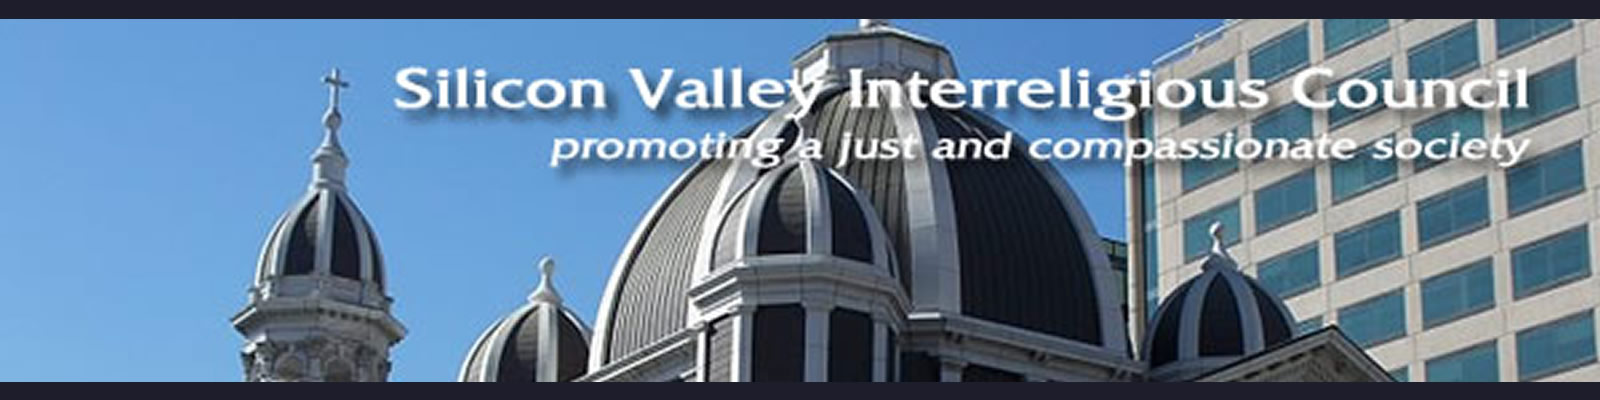 Silicon Valley Interreligious Council